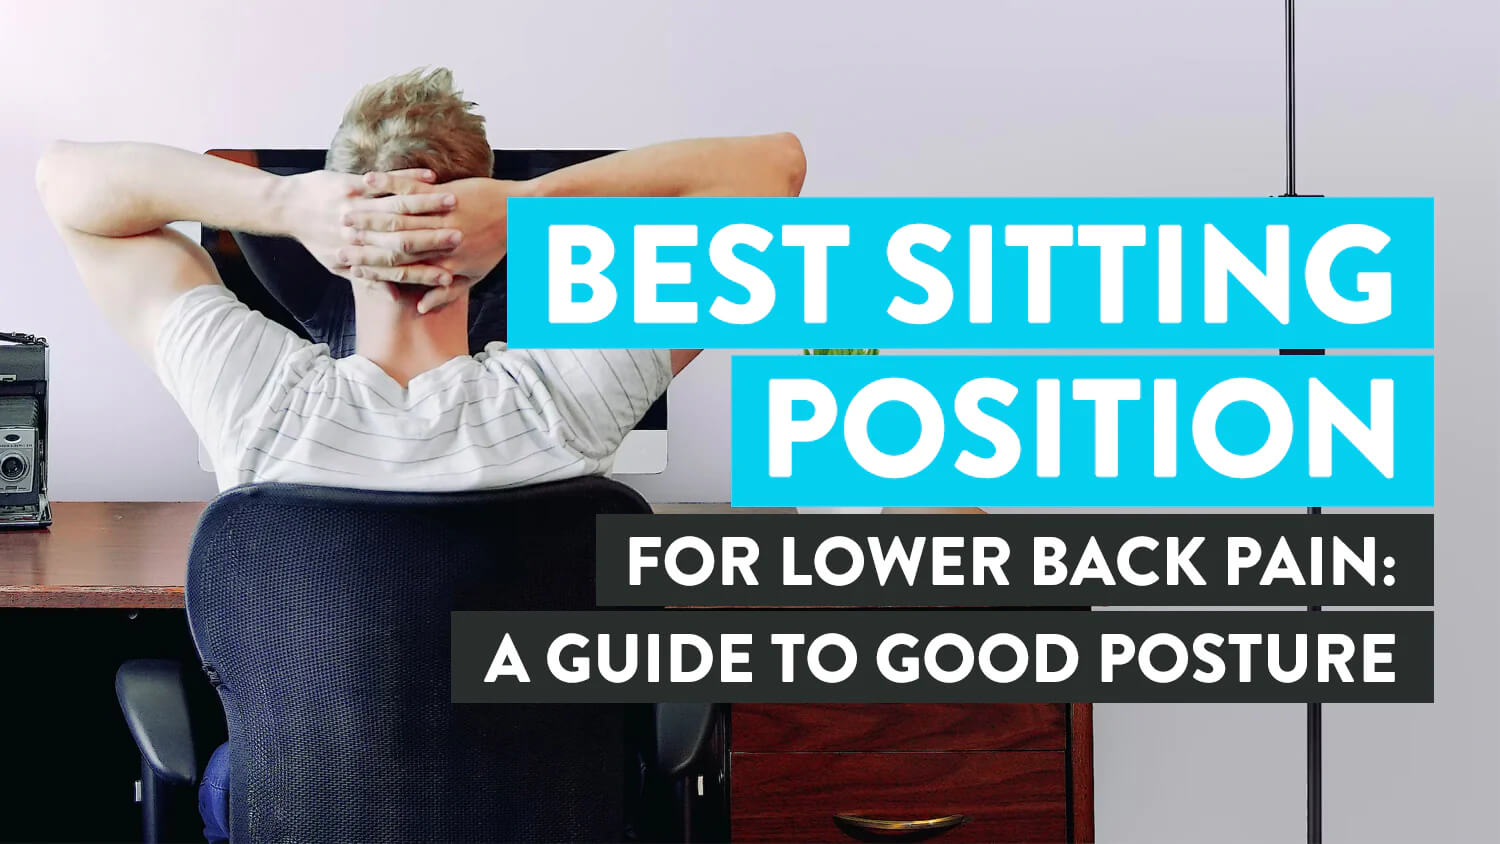 http://desky.ca/cdn/shop/articles/Best-Sitting-Position-For-Lower-Back-Pain.jpg?v=1690357346